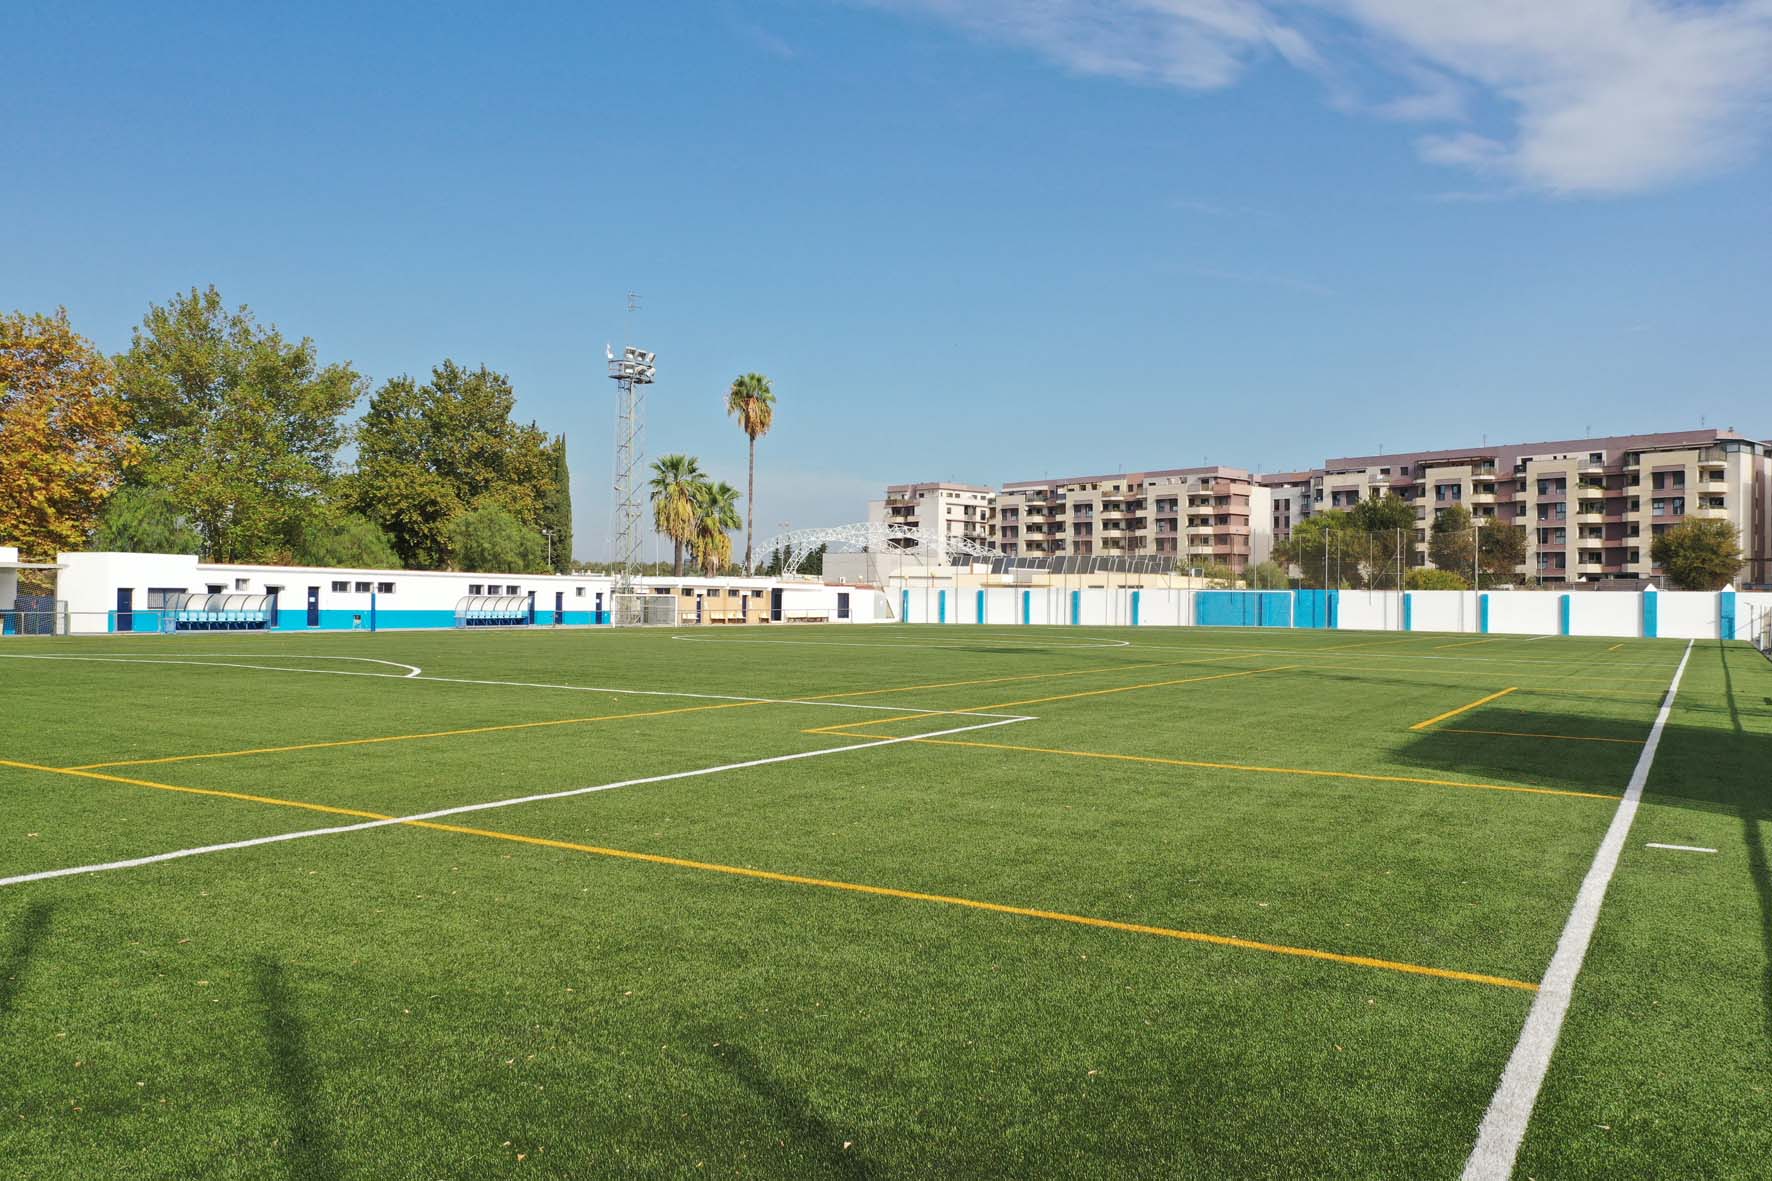 Los tres campos fútbol renuevan césped artificial